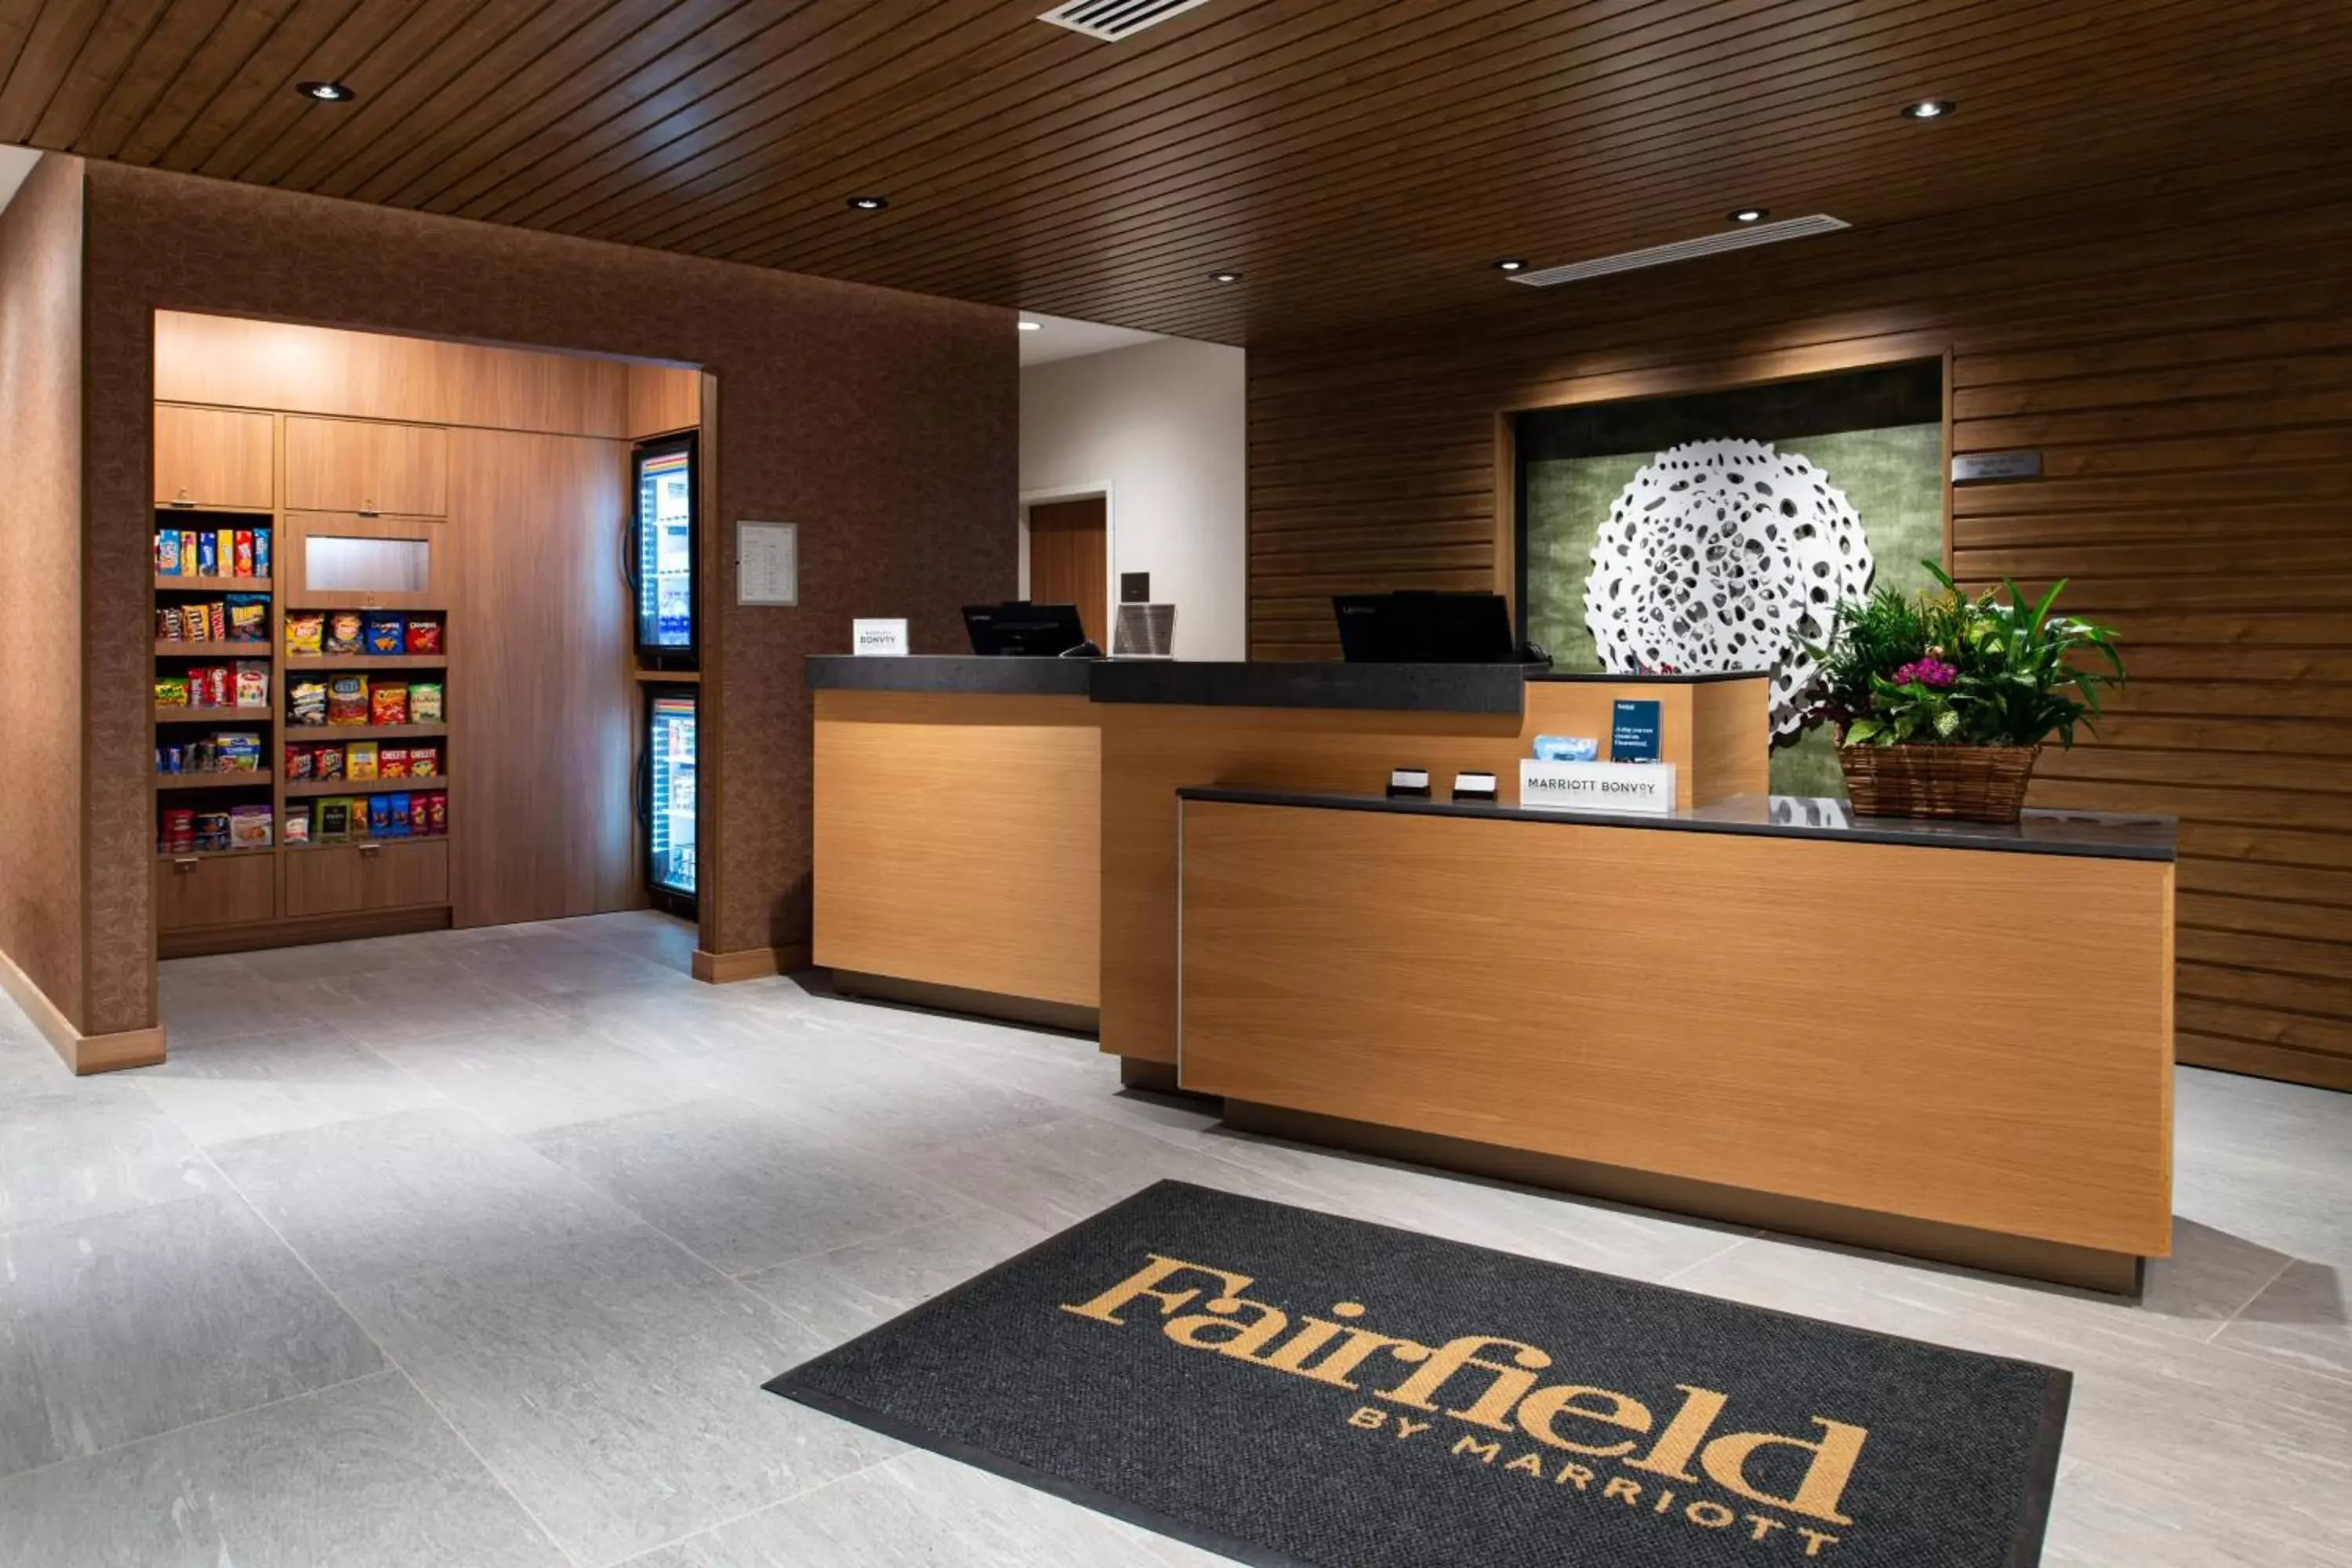 Lobby or reception in Fairfield Inn & Suites by Marriott Canton